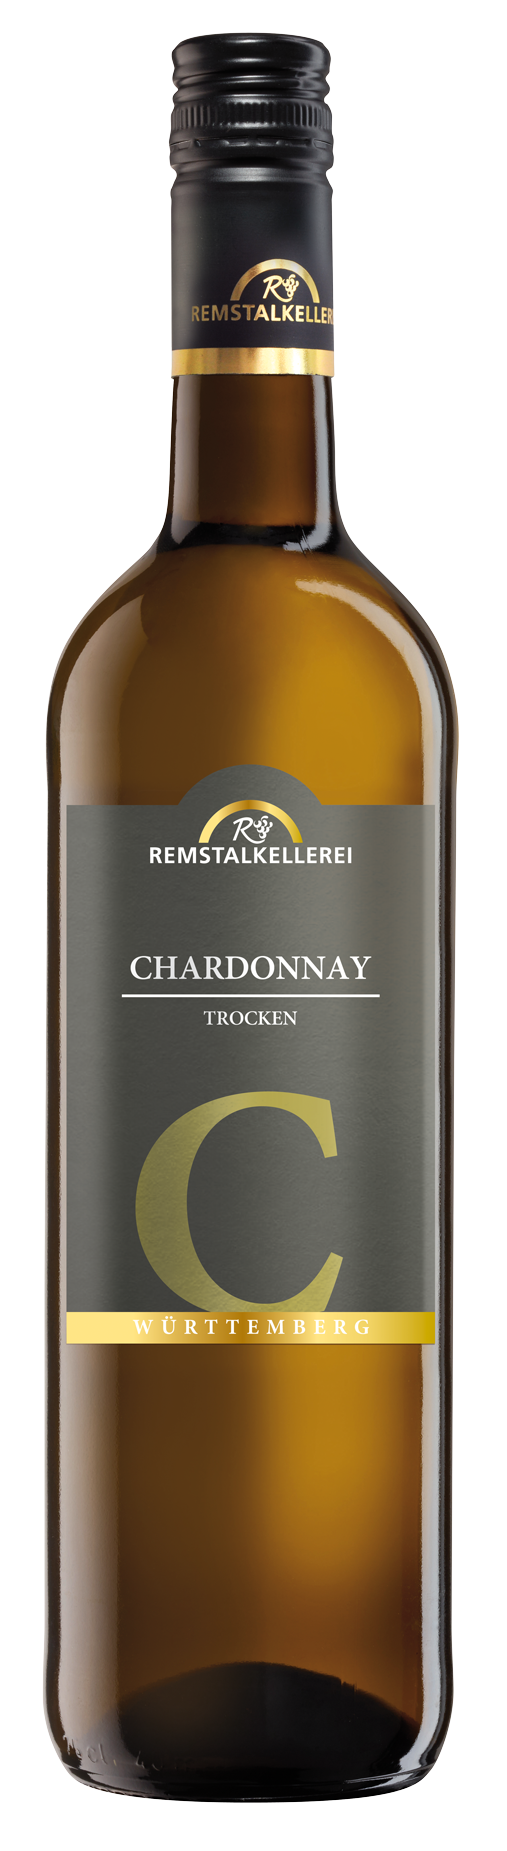 Chardonnay C Qualitätswein trocken 